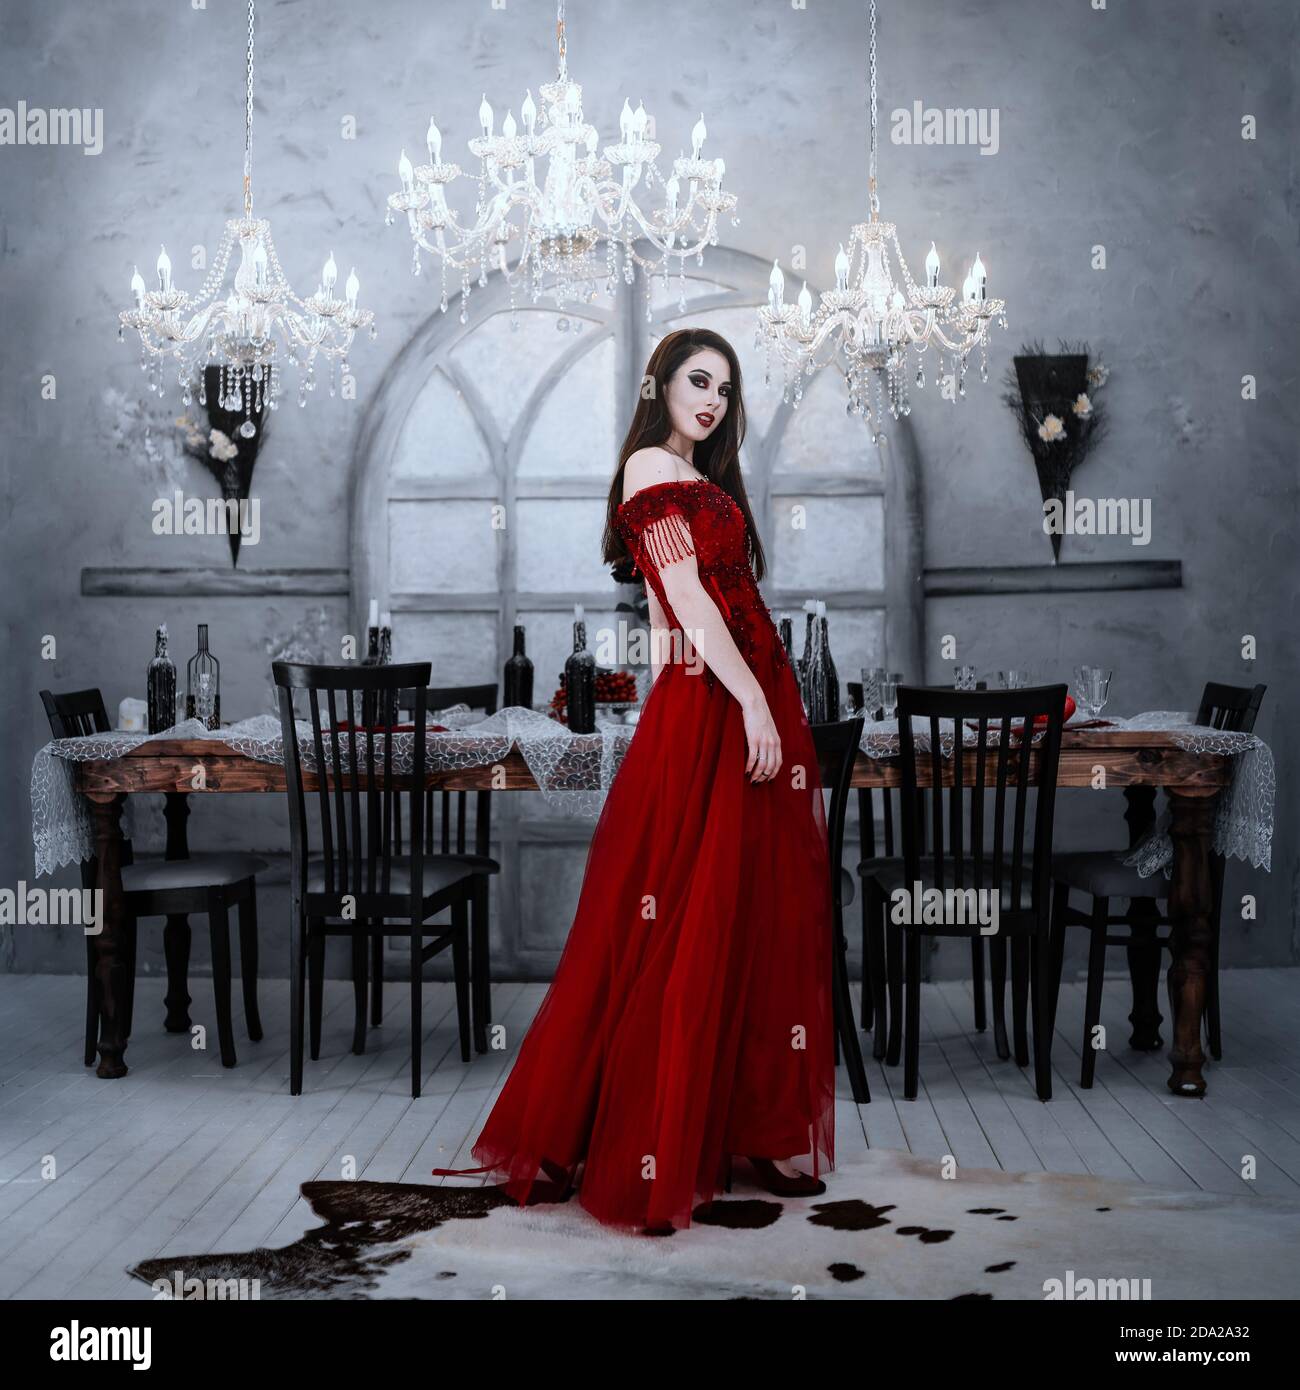 Vampire femme assoiffée de sang en robe rouge. Intérieur médiéval Banque D'Images